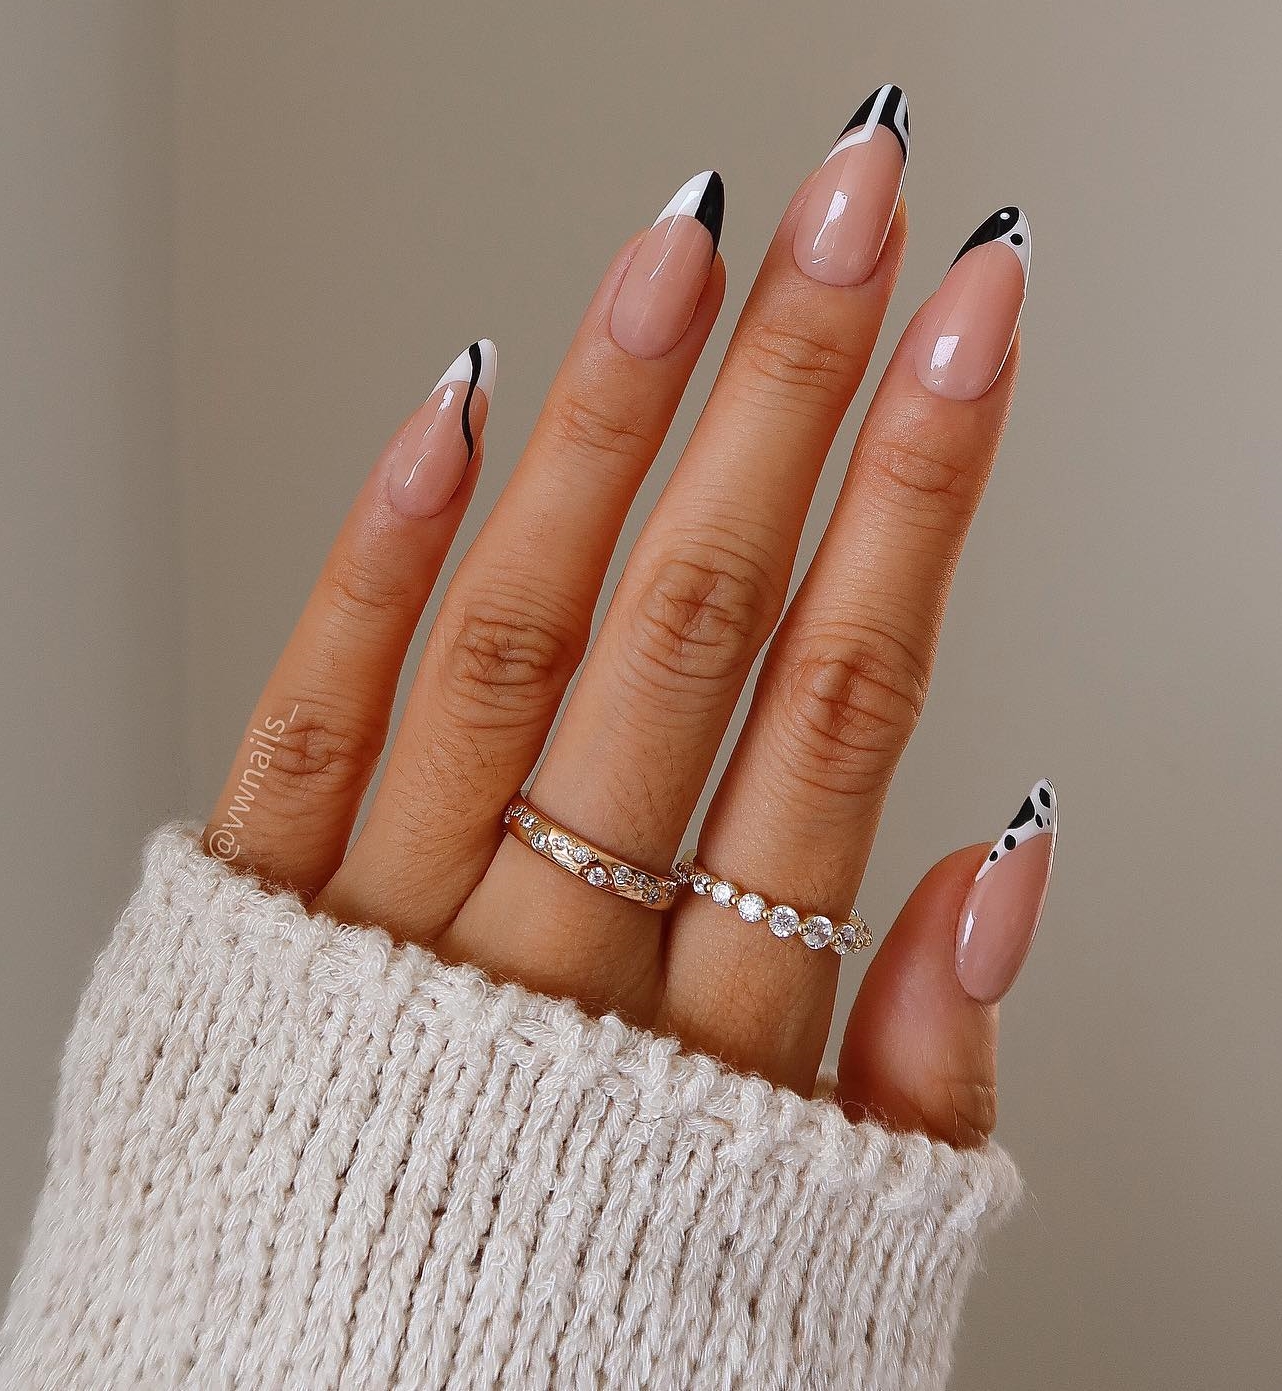 Lange Franse nagels met geometrisch zwart-wit ontwerp